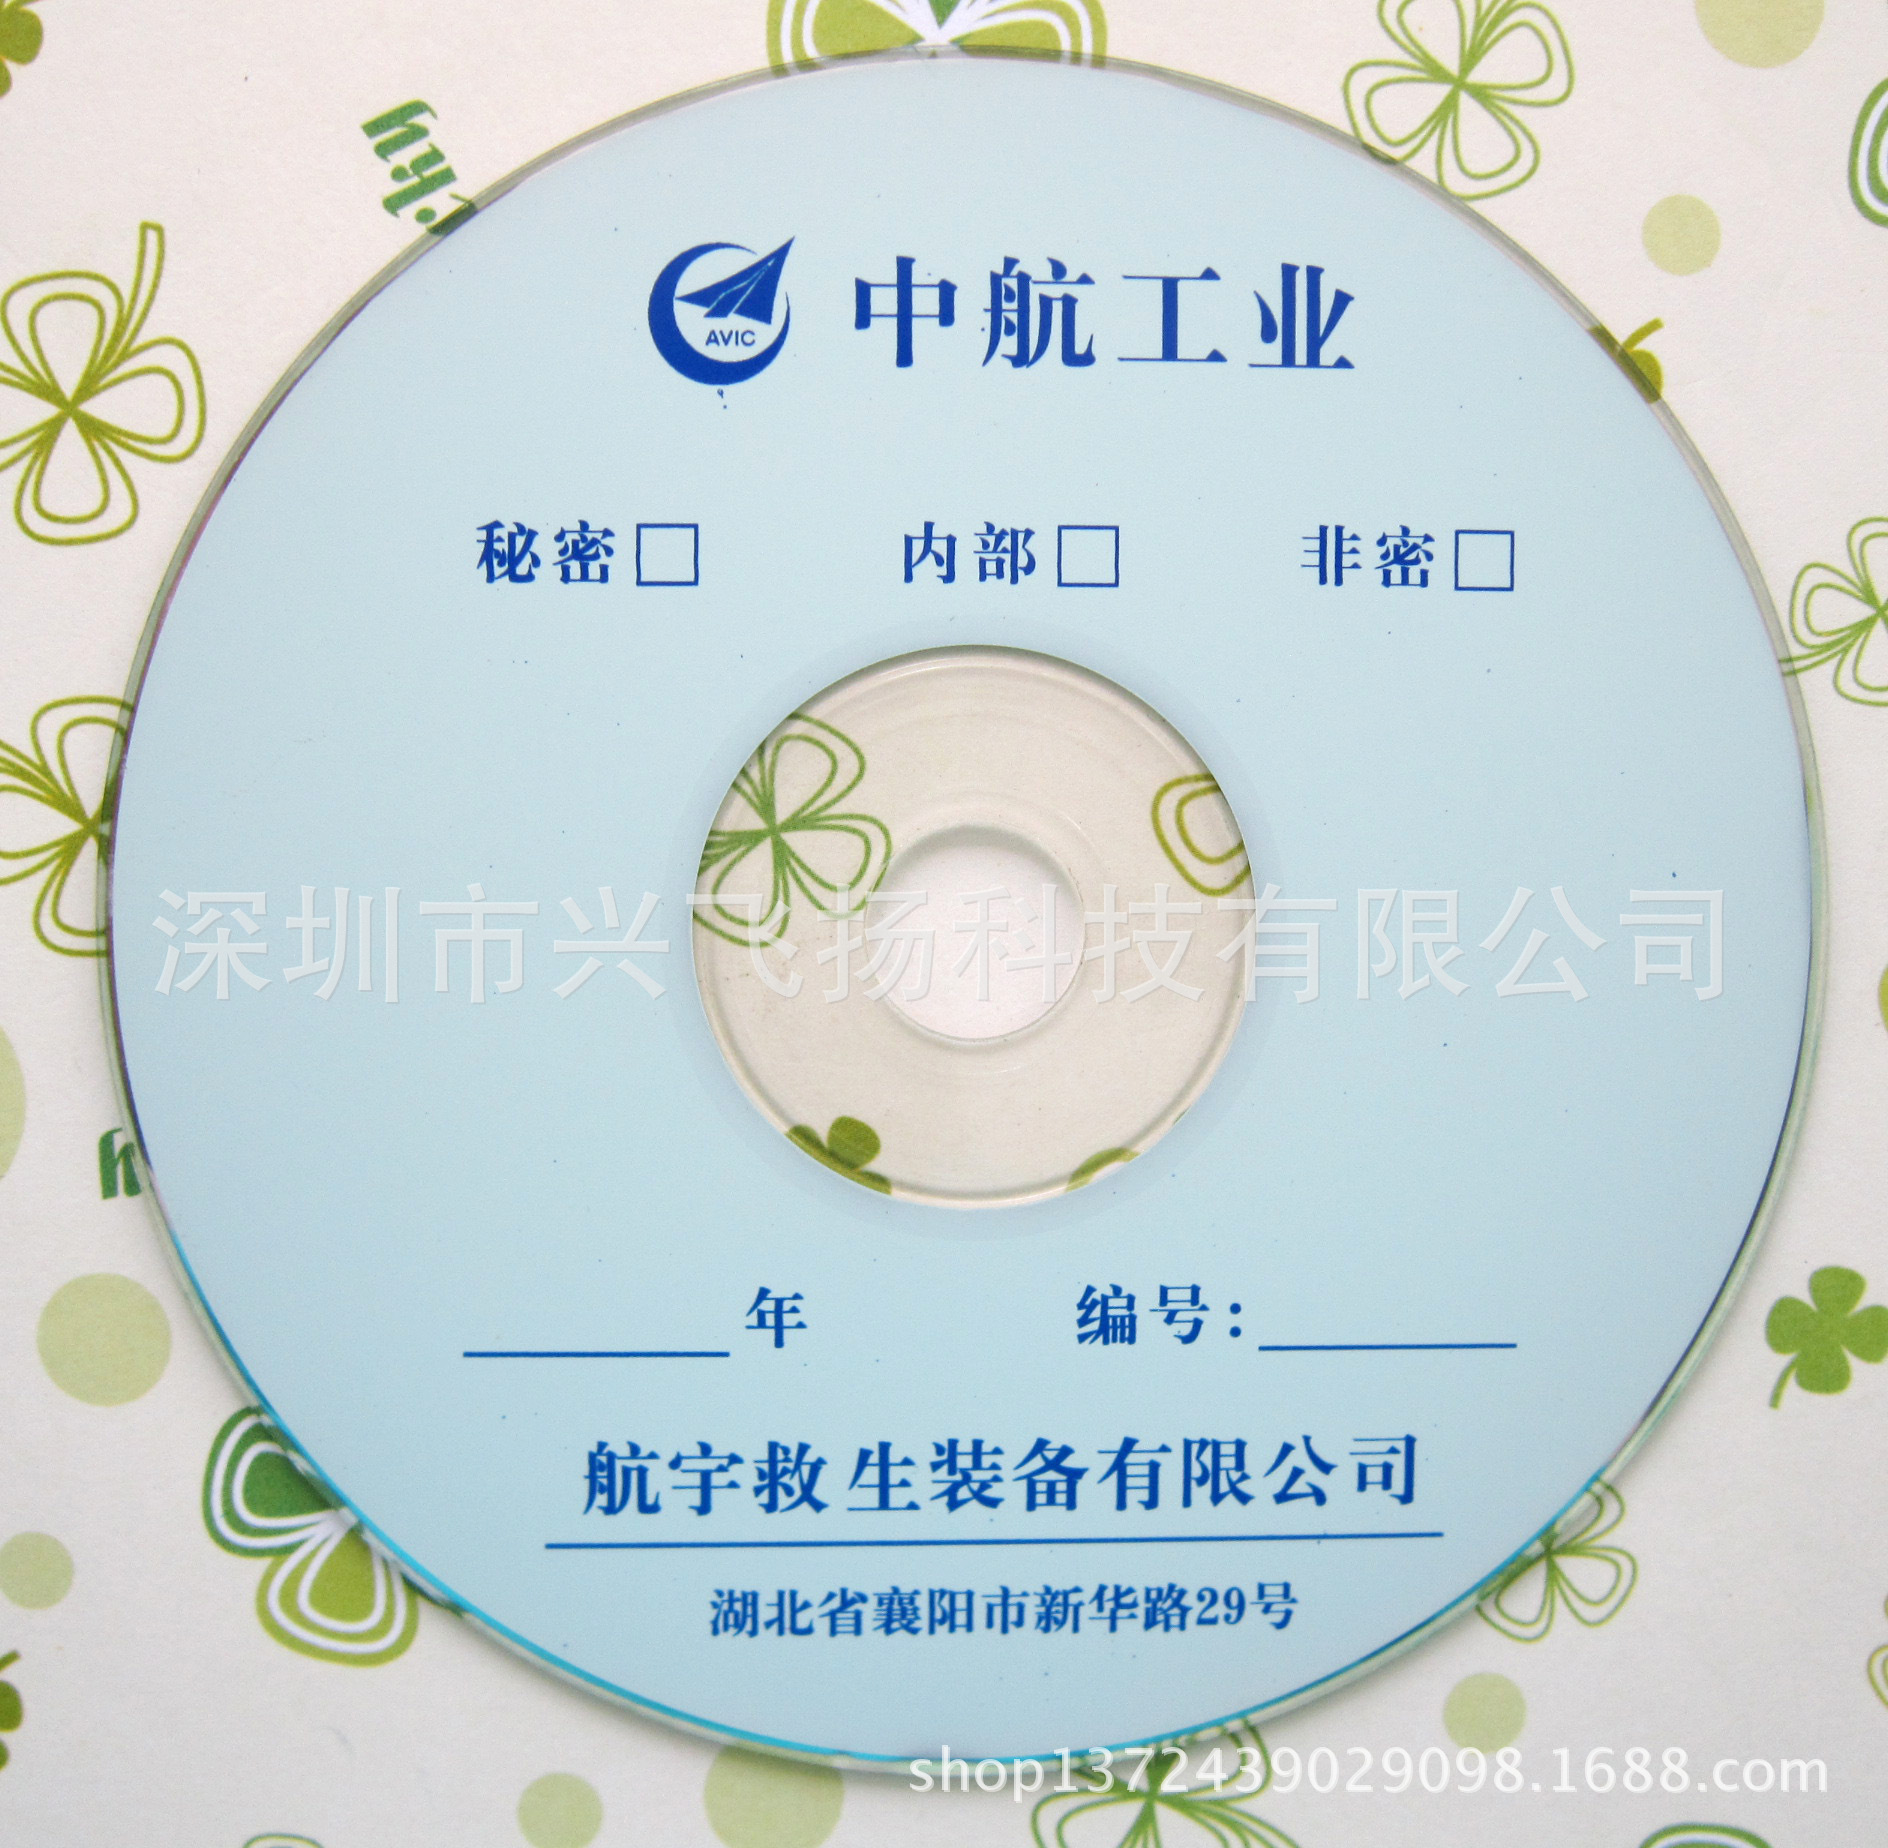 深圳光盘印刷 企业宣传光盘制作刻录 价格优惠 品质保证 交货快